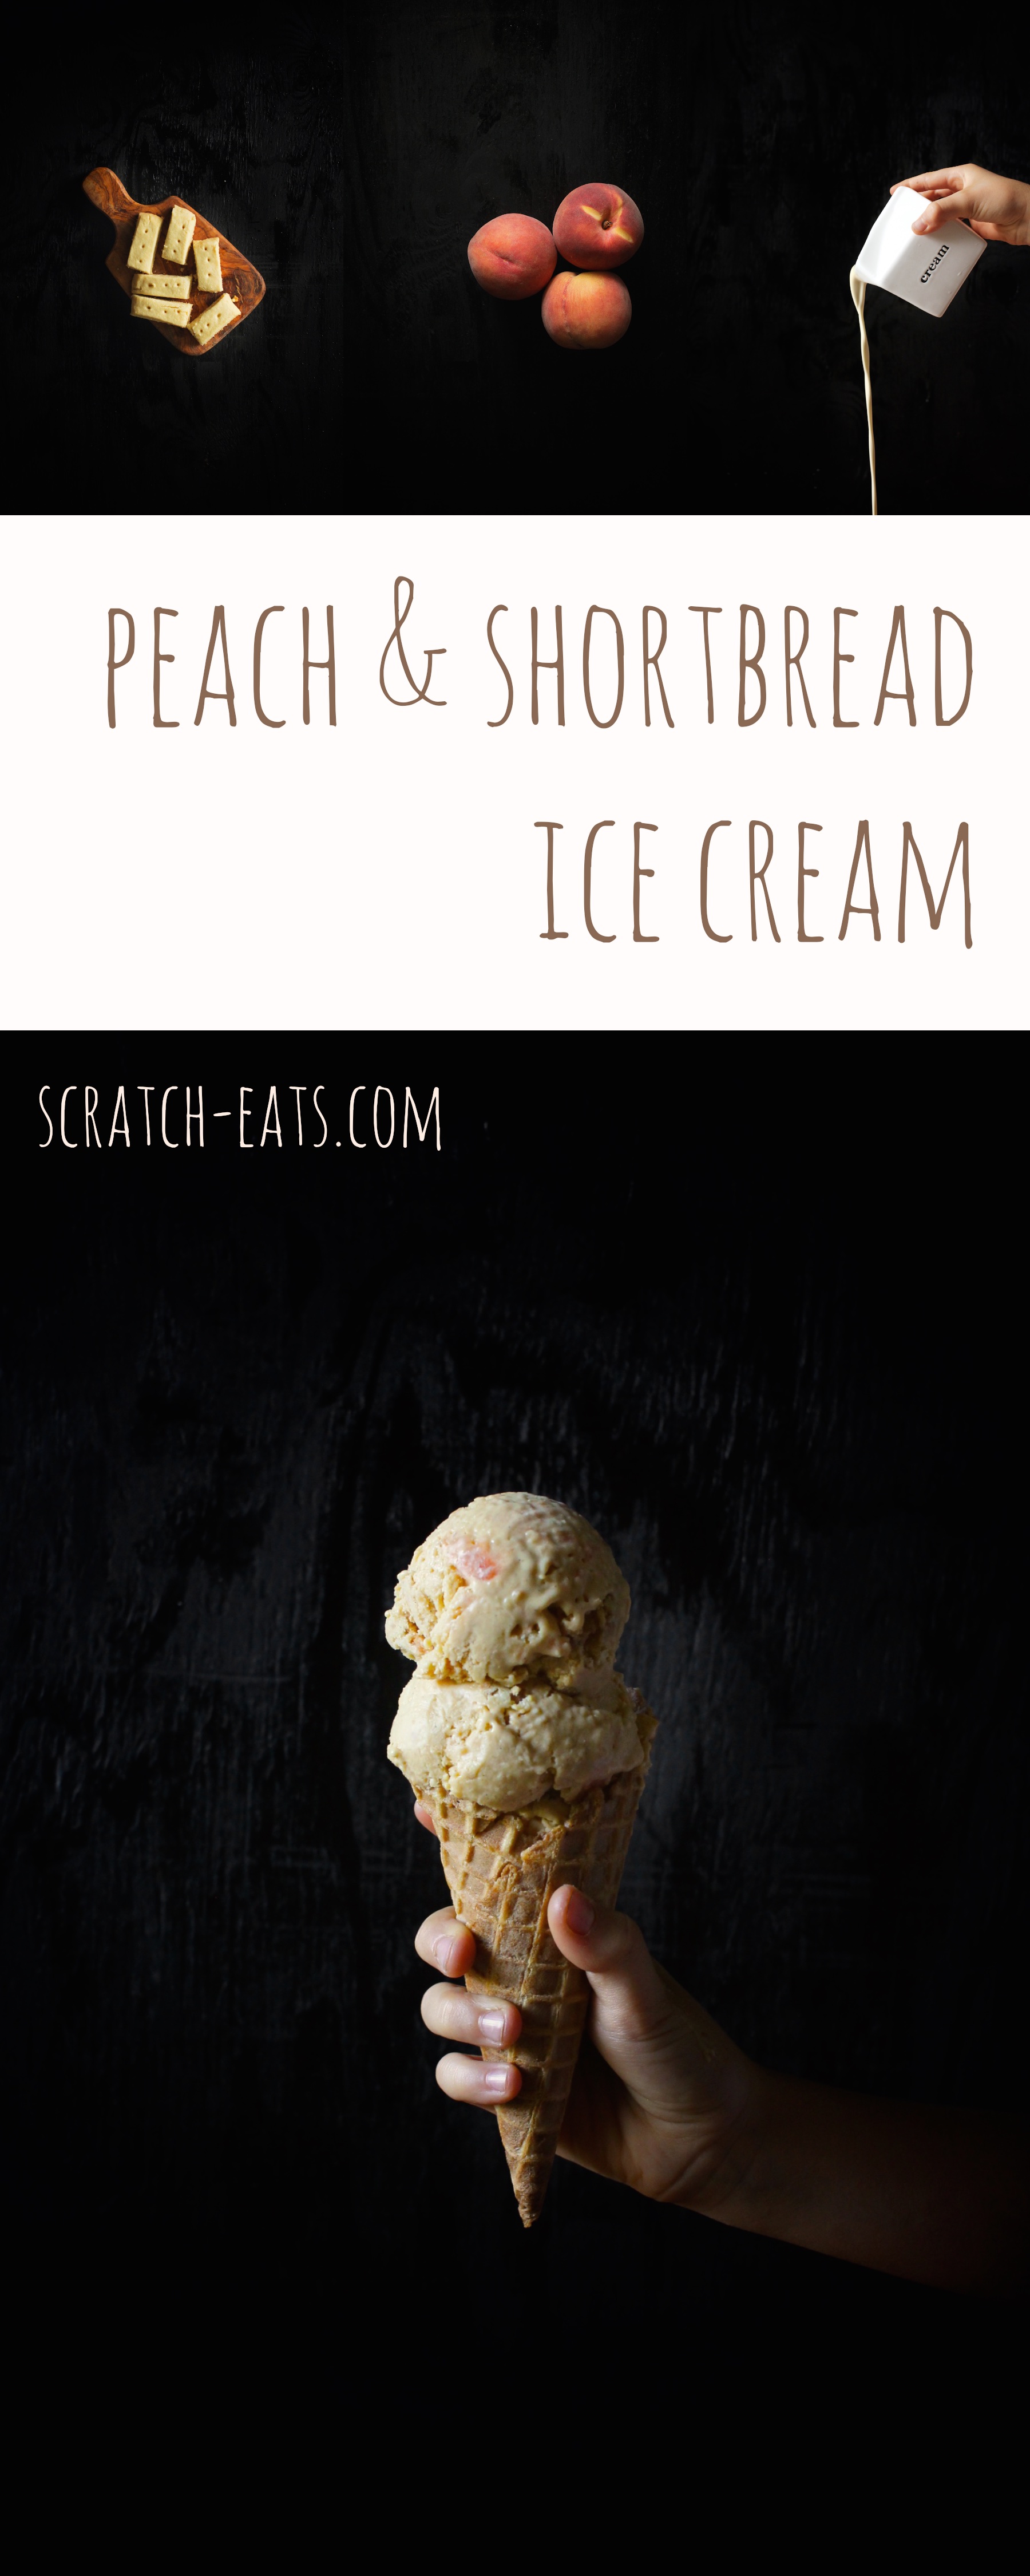 Peach & shortbread ice cream